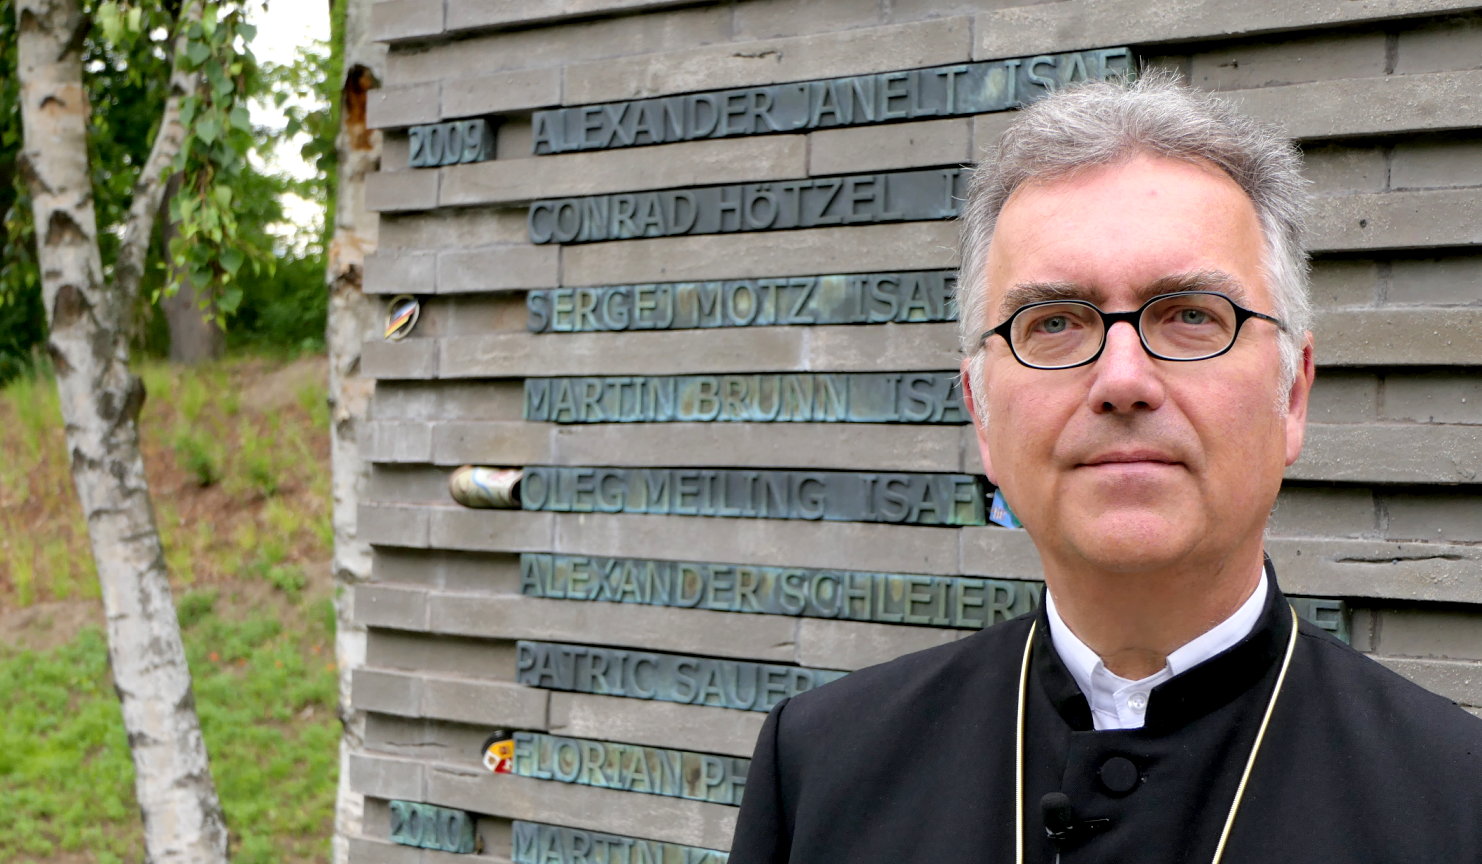 Evangelischer Militärbischof Sigurd Rink verlässt nach 6 Jahren Amtszeit die Militärseelsorge